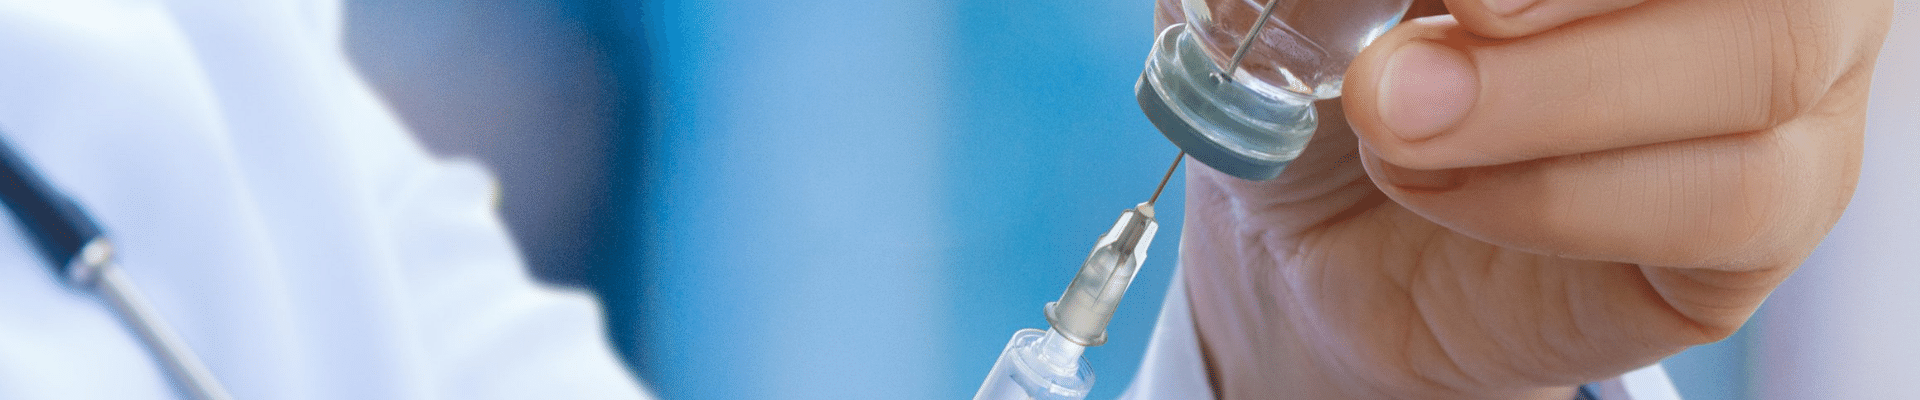 COVID-19 Vaccine Traceability